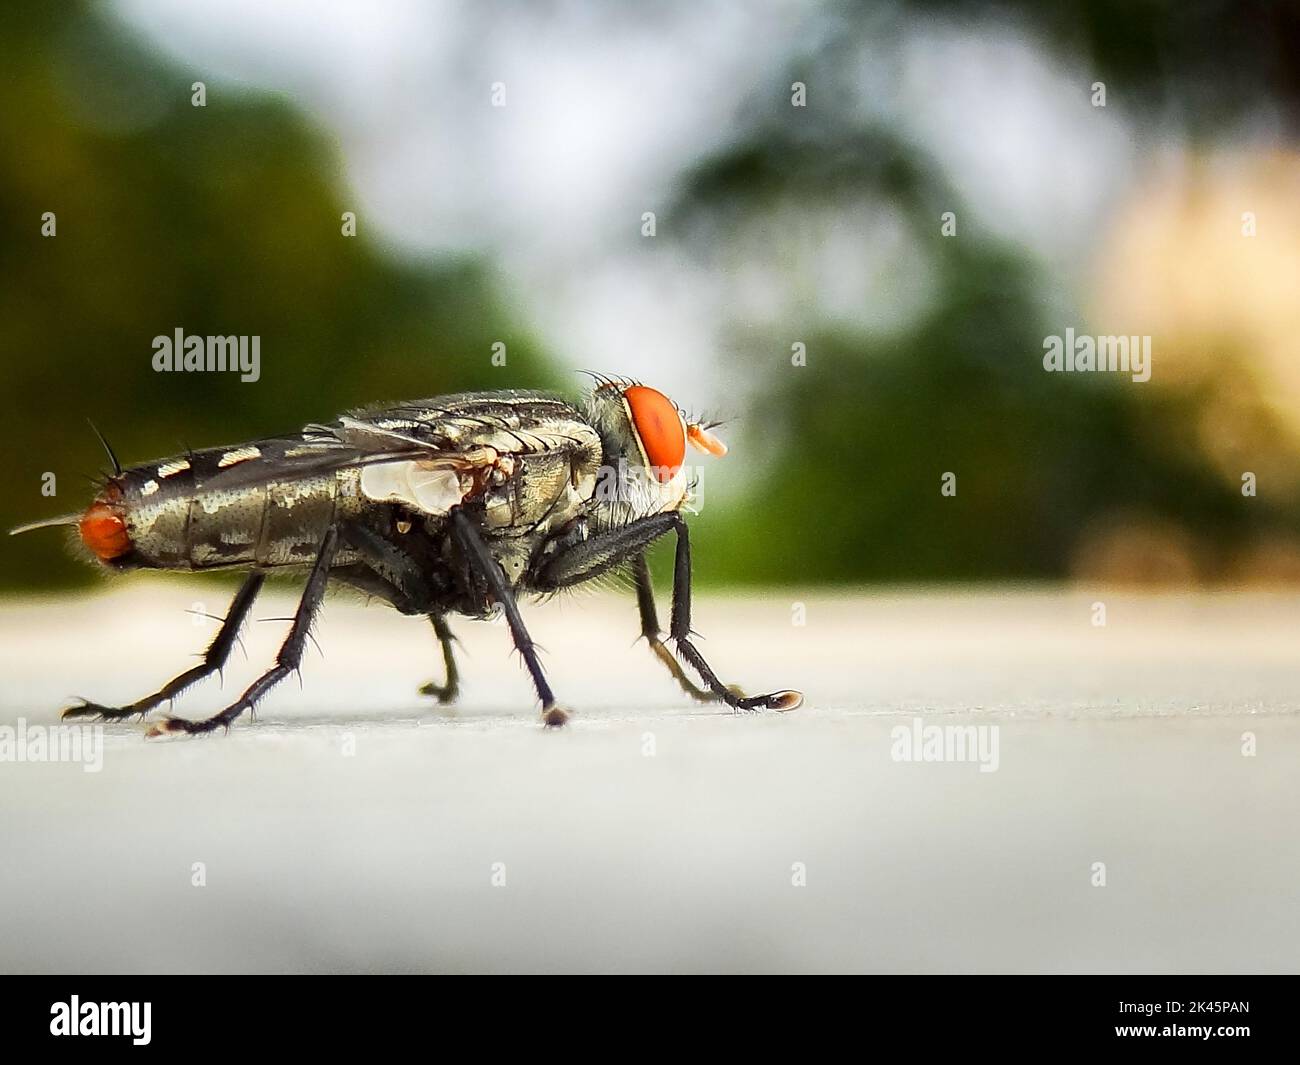 Gros plan d'une mouche de chair . Les Sarcophagidae sont une famille de mouches communément connues sous le nom de mouches à chair. Uttarakhand Inde. Banque D'Images